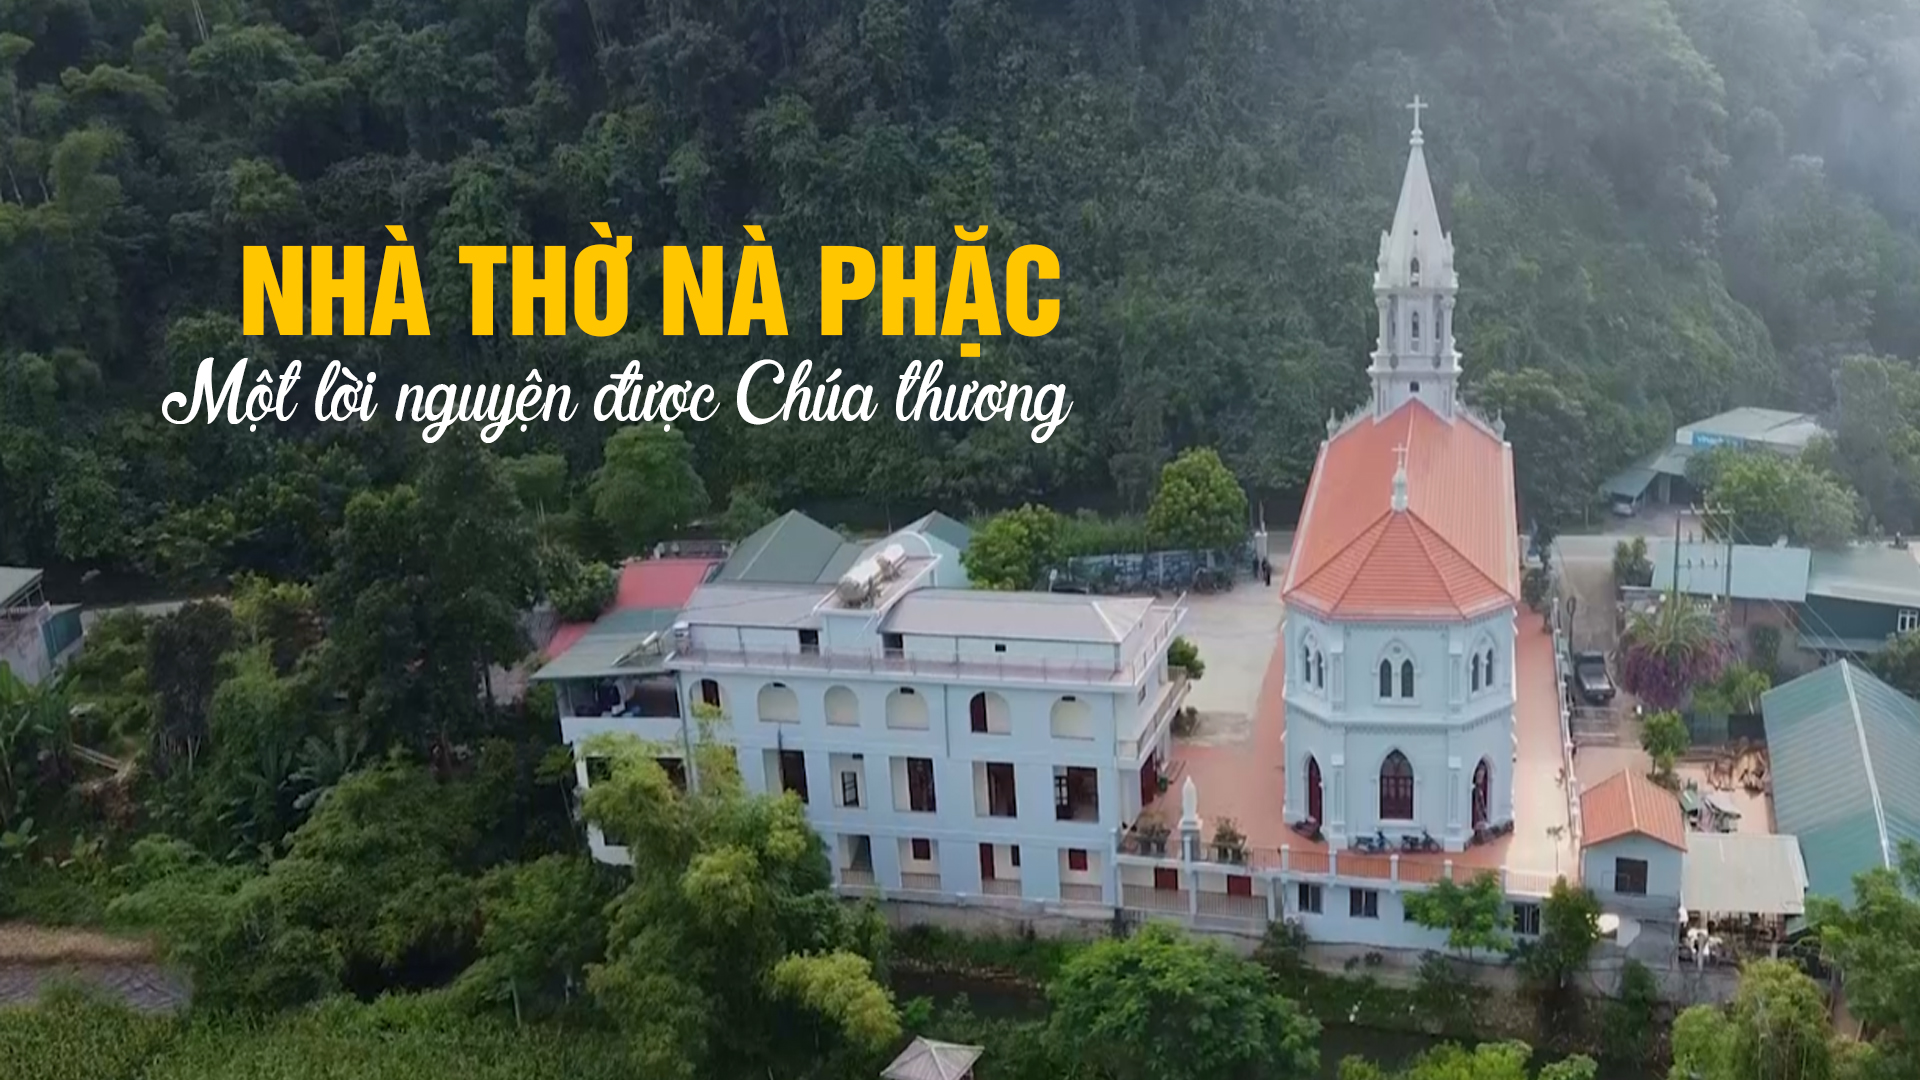 GP.Bắc Ninh - Video hoan ca và thánh lễ cung hiến nhà thờ Nà Phặc – Bắc Kạn